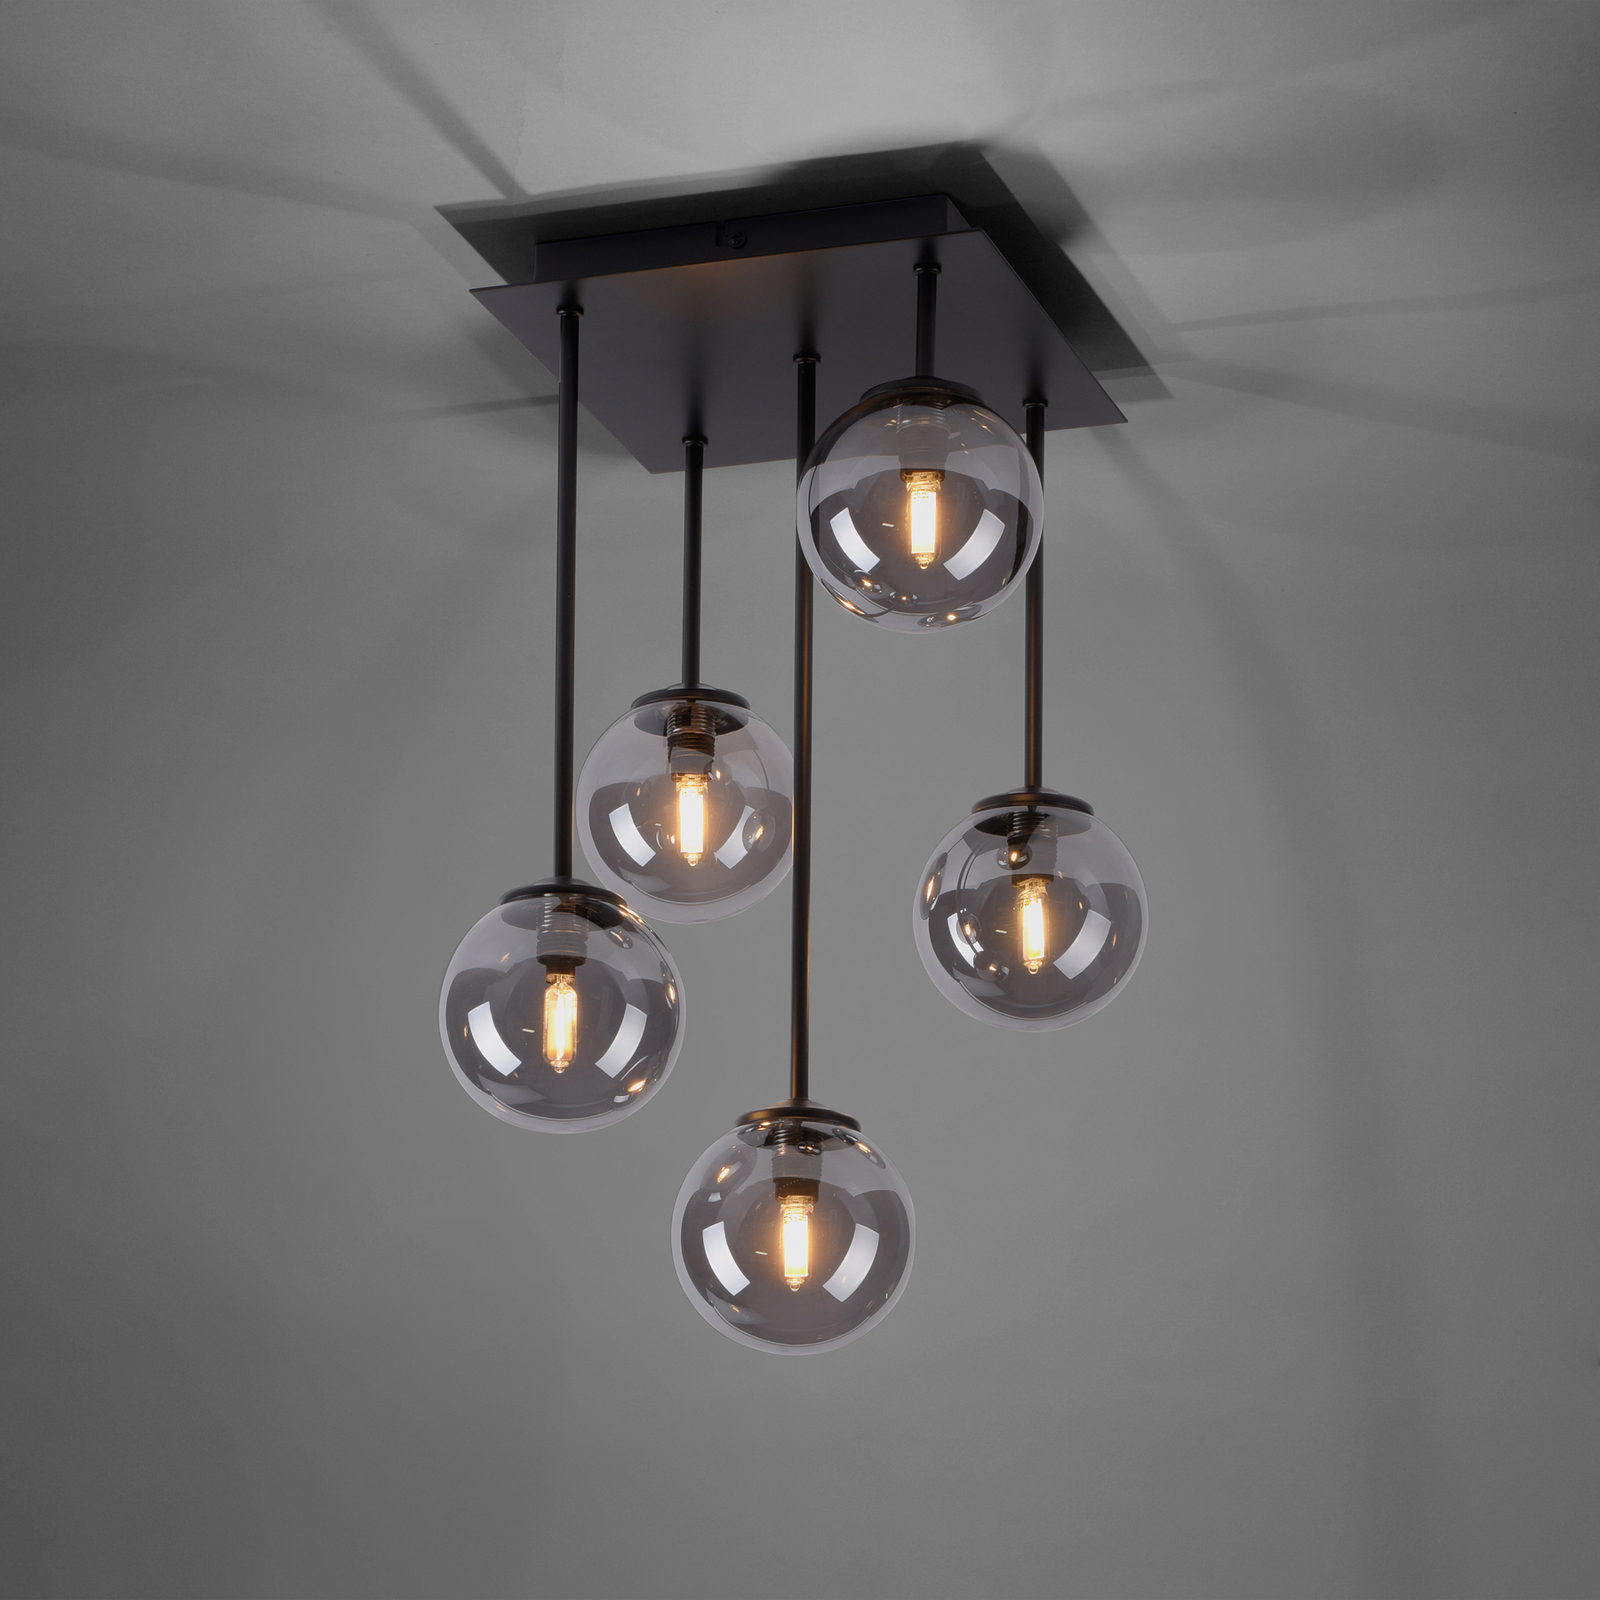 Manifesteren veronderstellen Merchandising Paul Neuhaus Widow LED plafondlamp, 5-lamps | Lampen24.nl